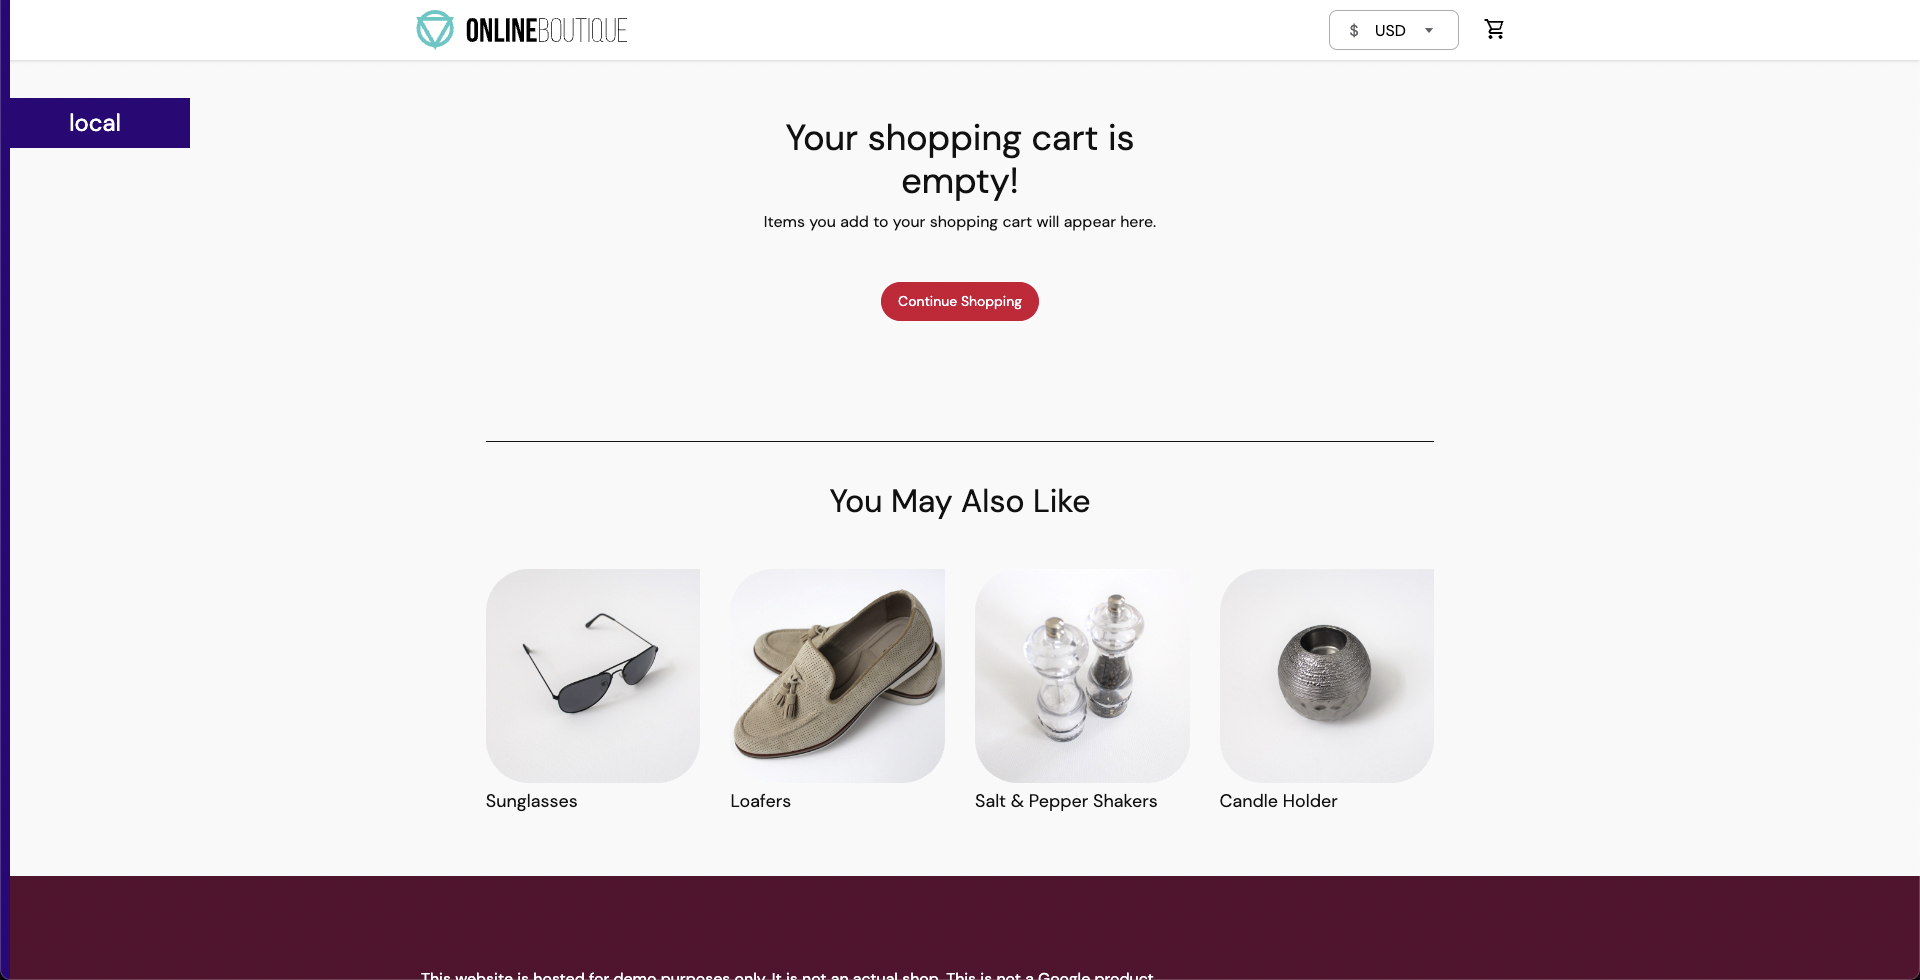 Online Boutique App Cart